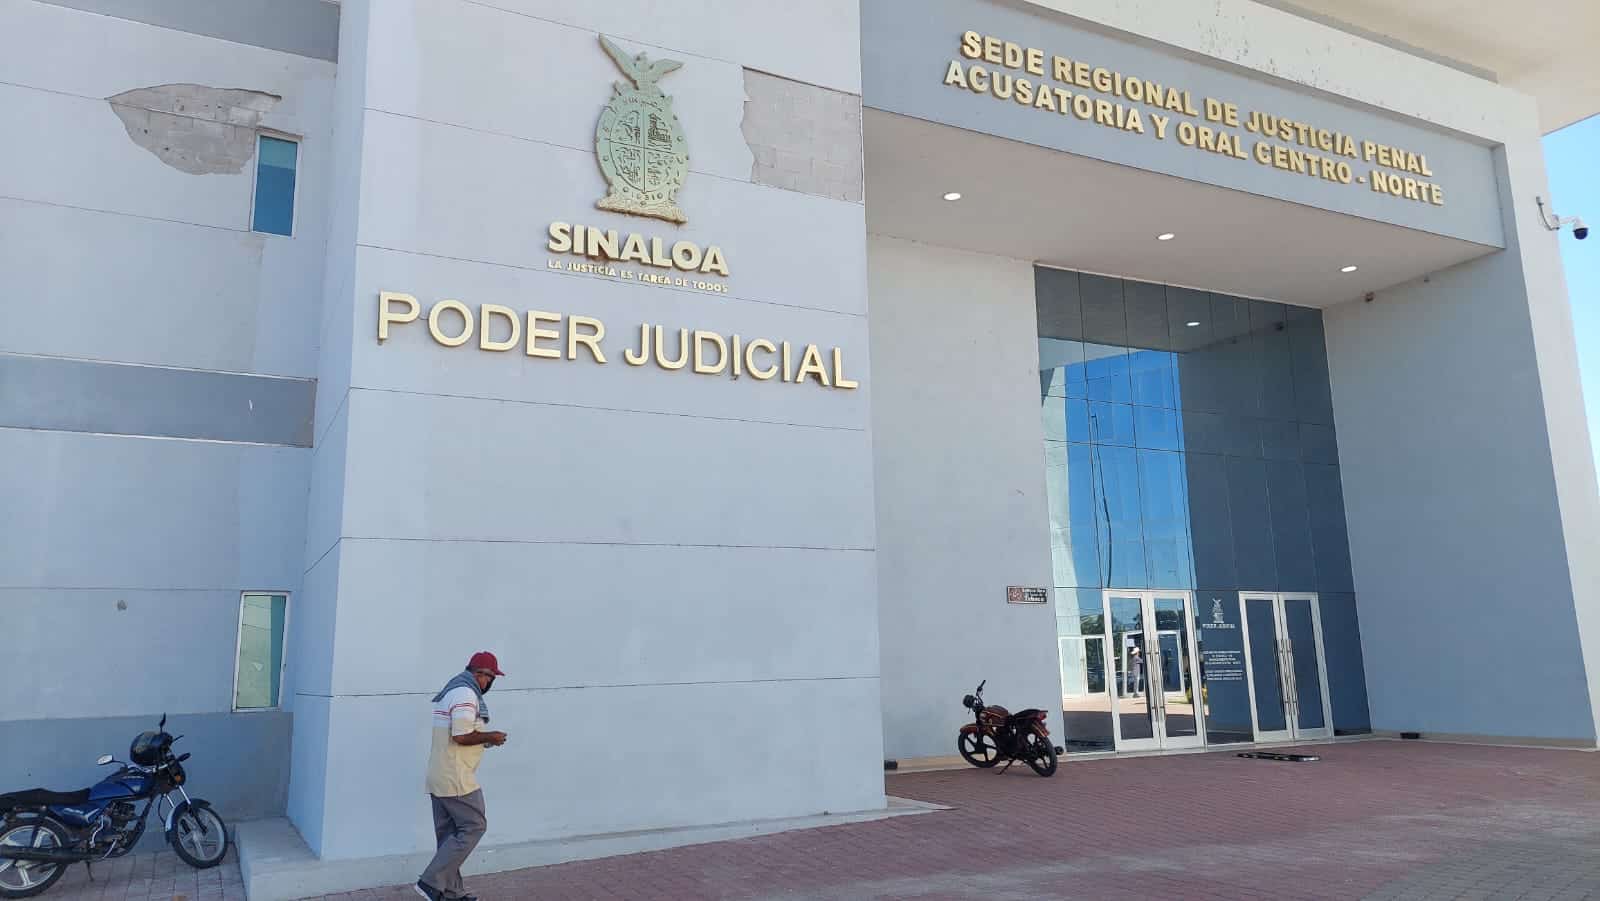 Instalaciones de la sede regional de justicia penal, acusatoria y oral en Salvador Alvarado